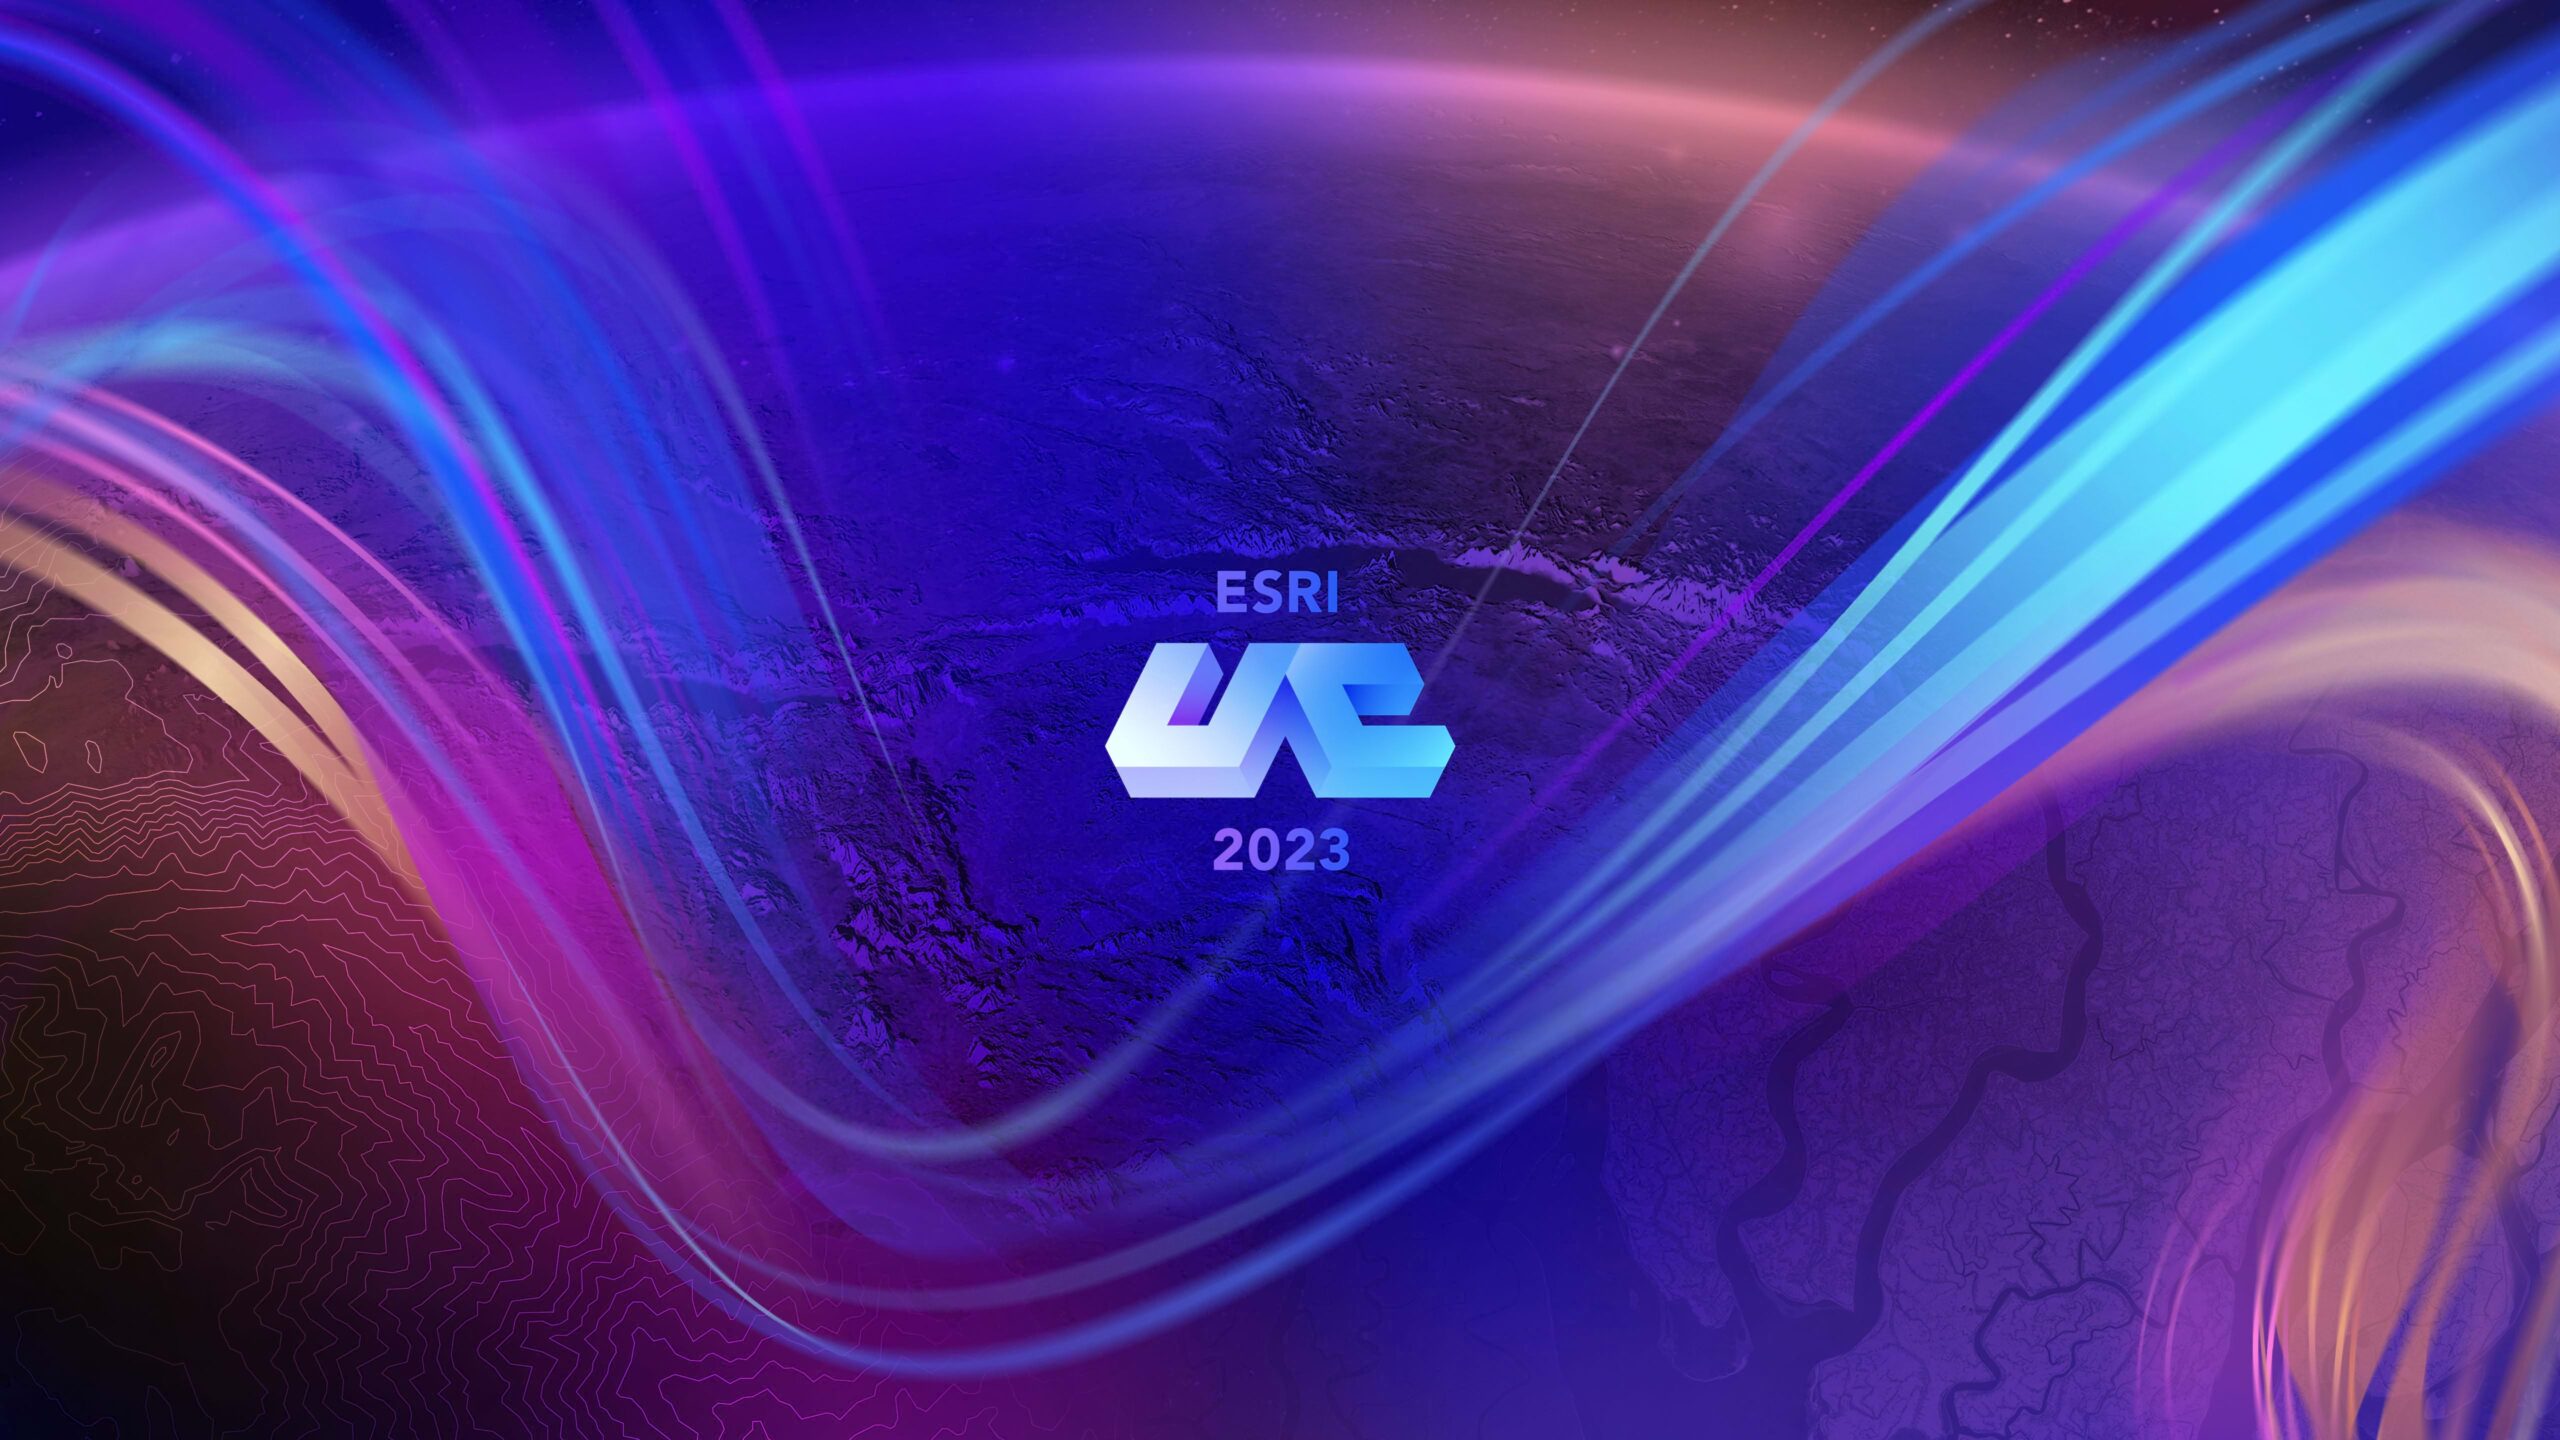 Esri User Conference 2023 logo